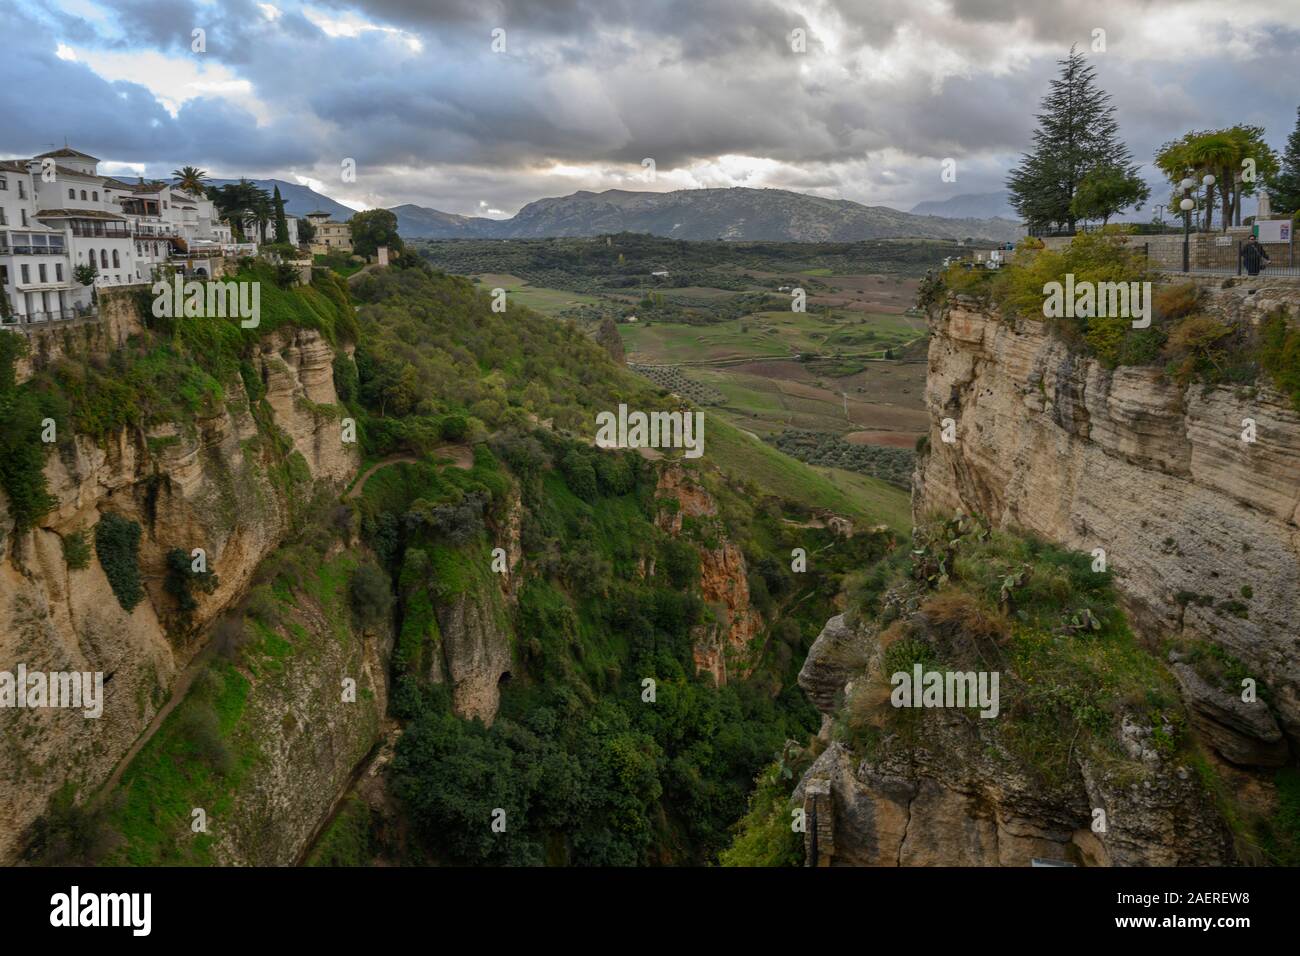 Scenic view of landscape, Ronda, Malaga Province, Spain Stock Photo